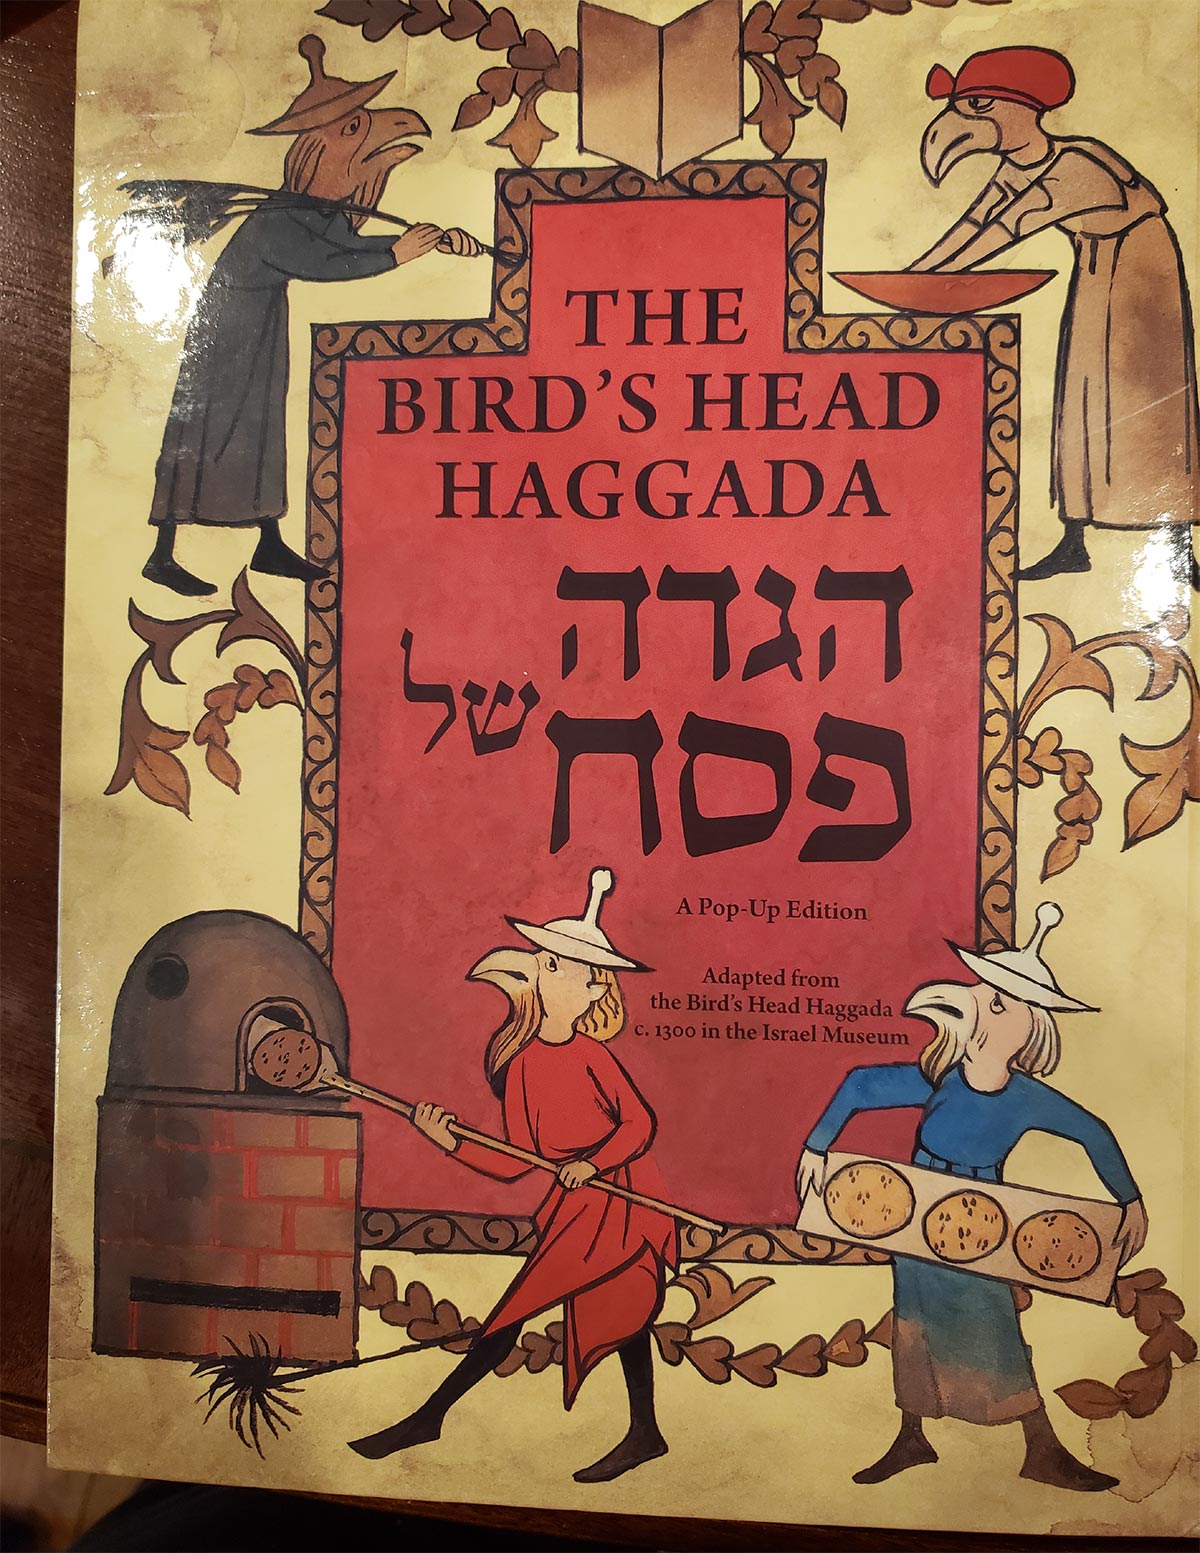 a depiction of "The Bird's Head Haggada"